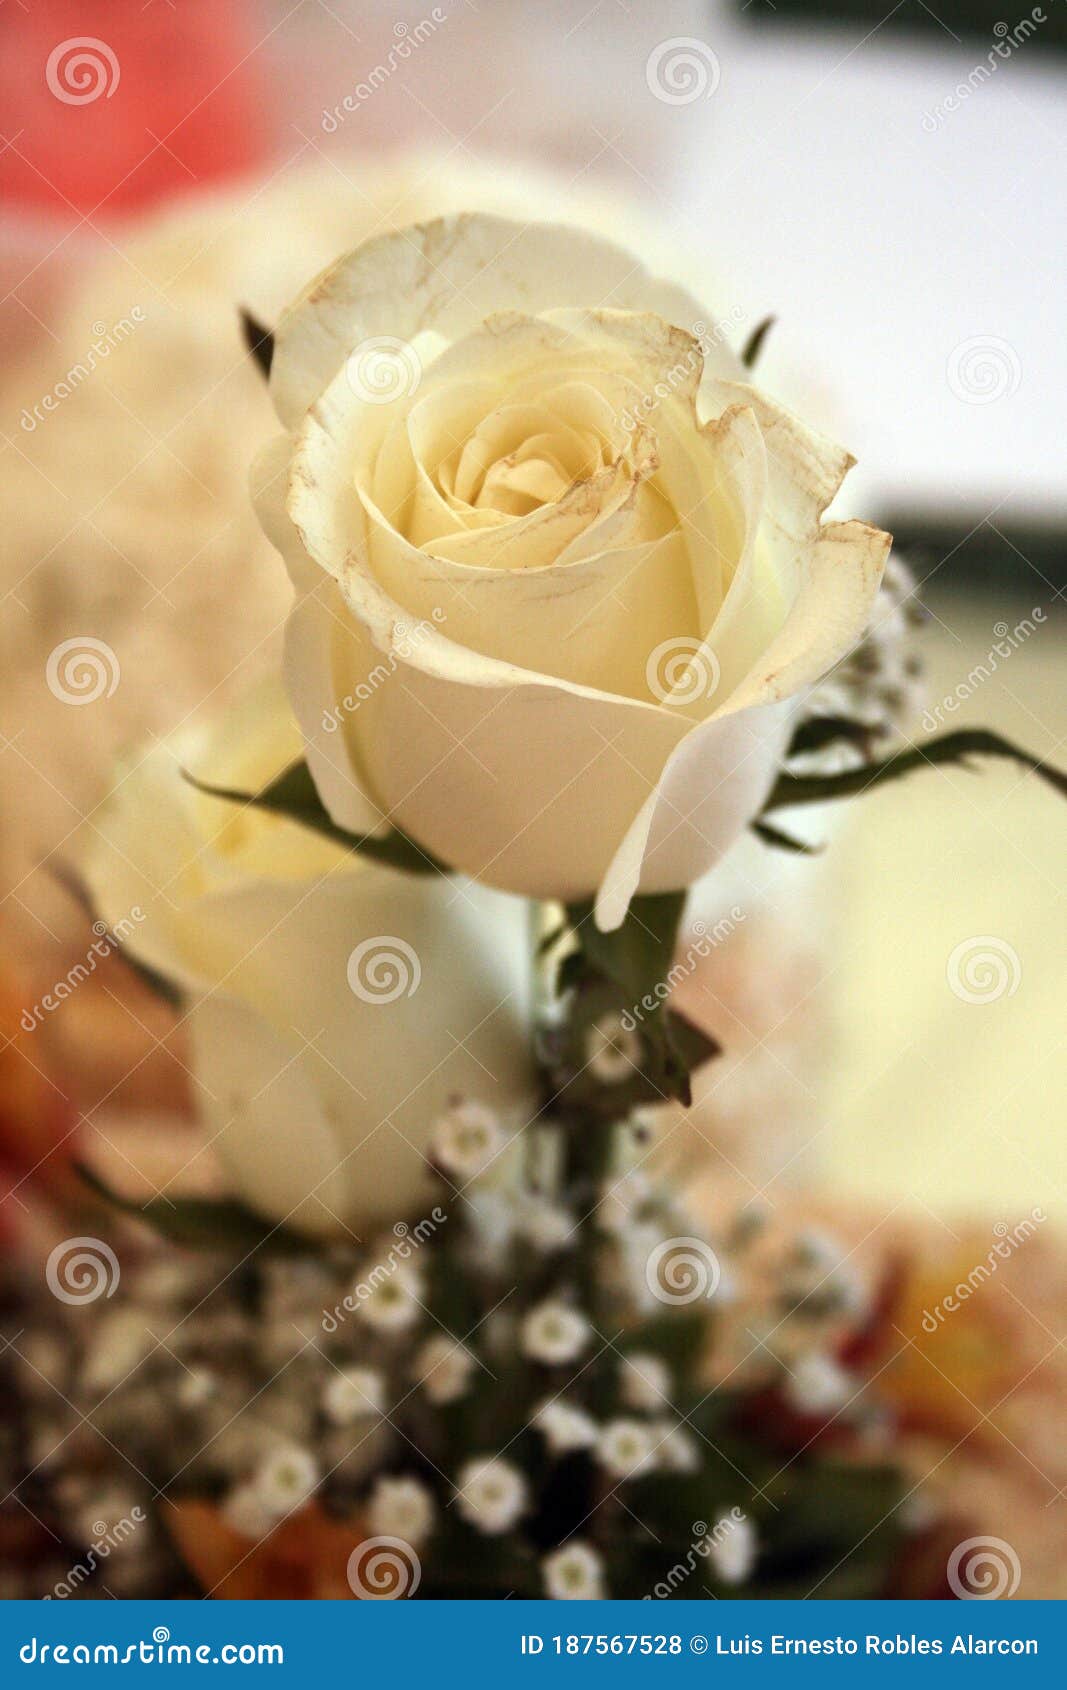 beautiful white wedding rose  romances decoration